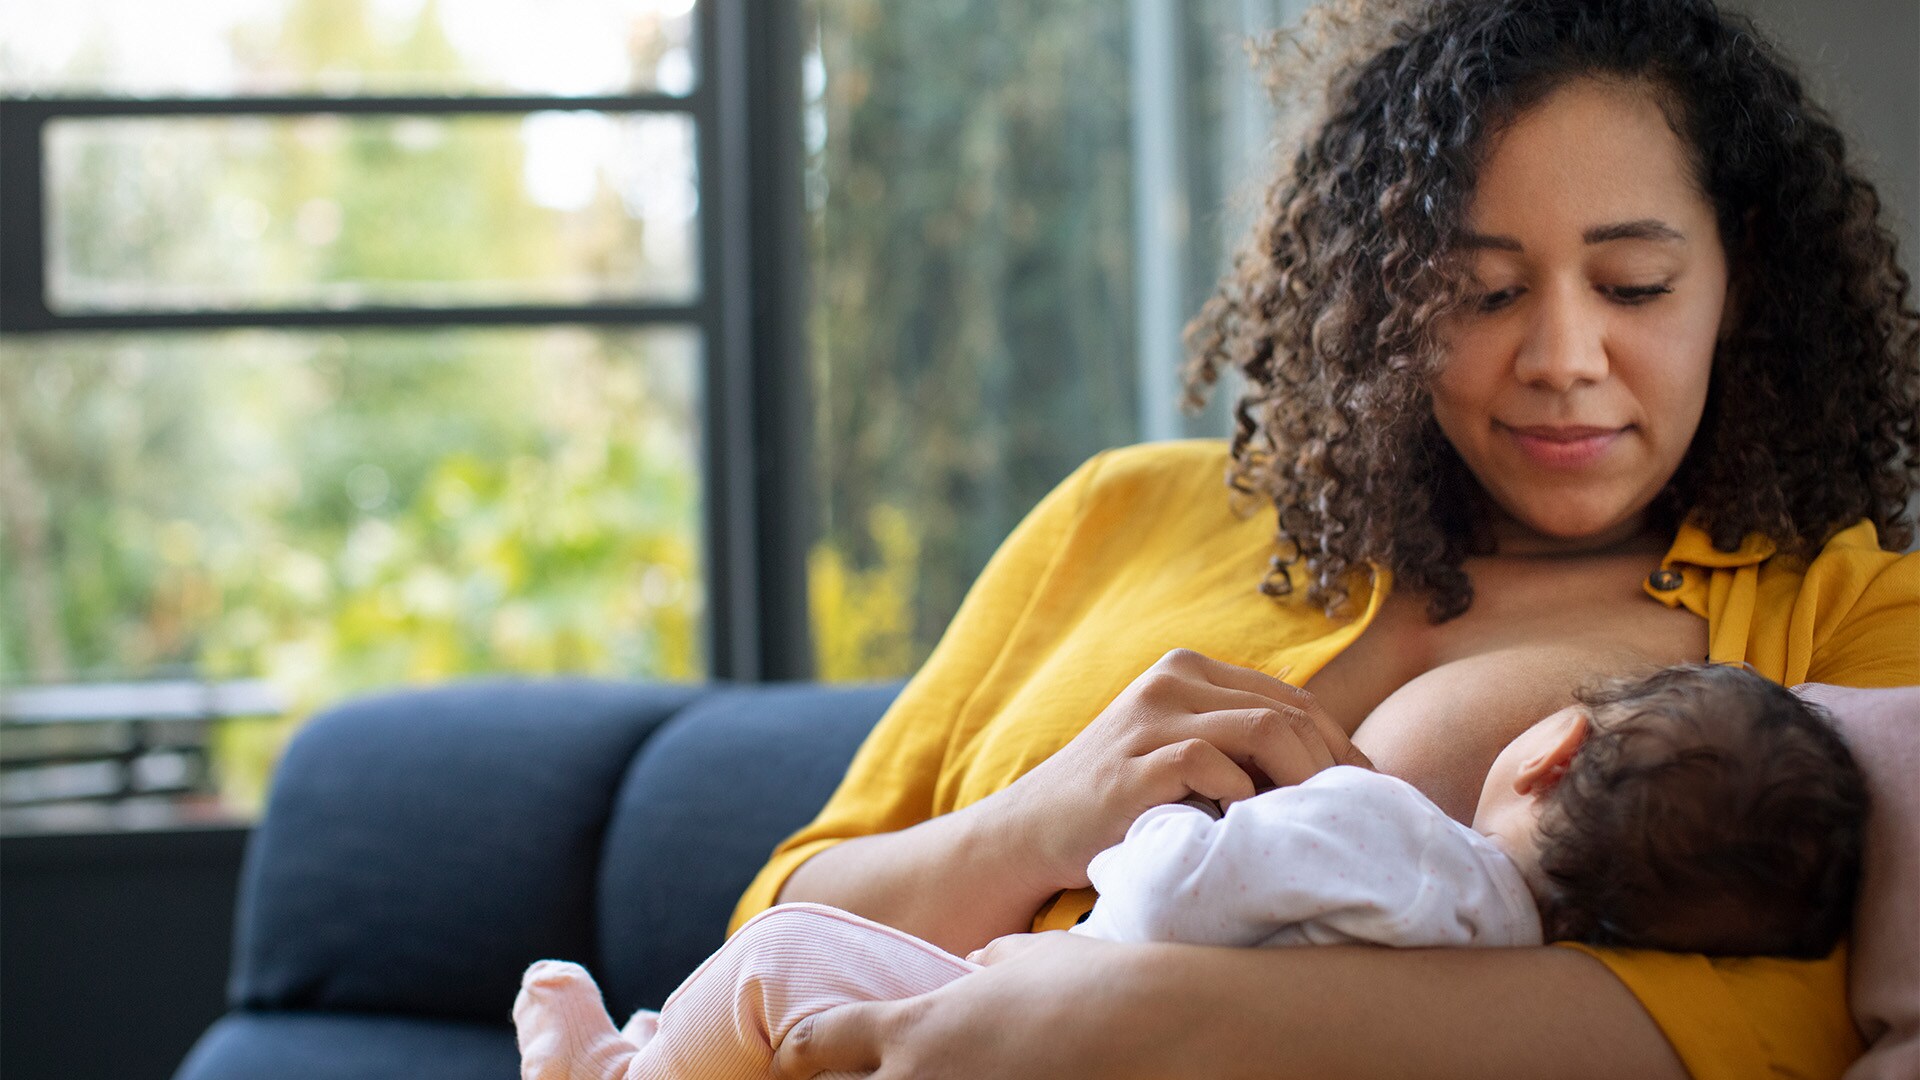 Estudio de Philips establece que el 66% de las madres se sentirían más seguras y cómodas amamantando en público, si este acto se considerara “normal”